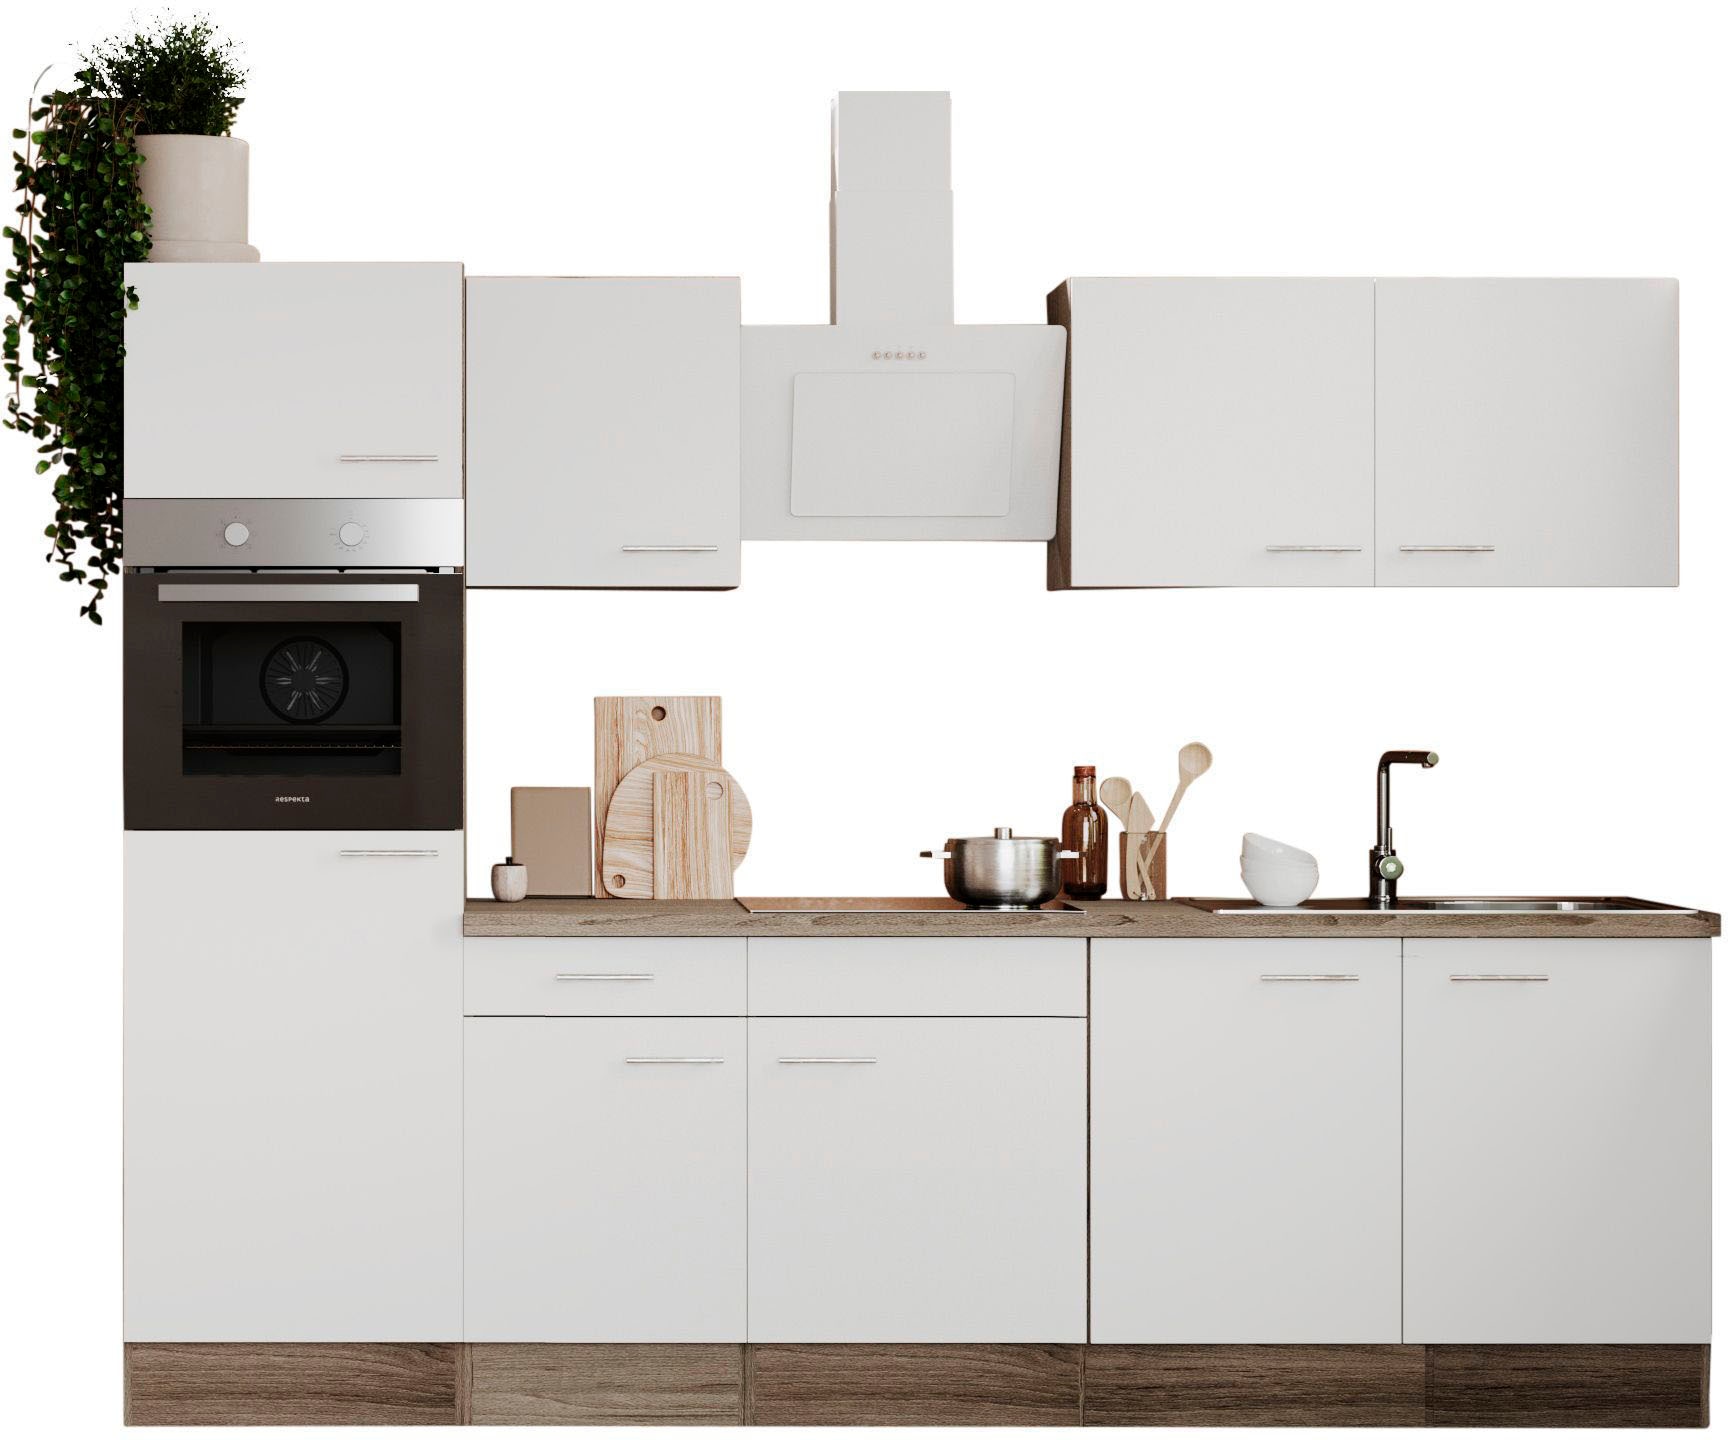 RESPEKTA Küche »Oliver«, Breite 270 cm, wechselseitig aufbaubar